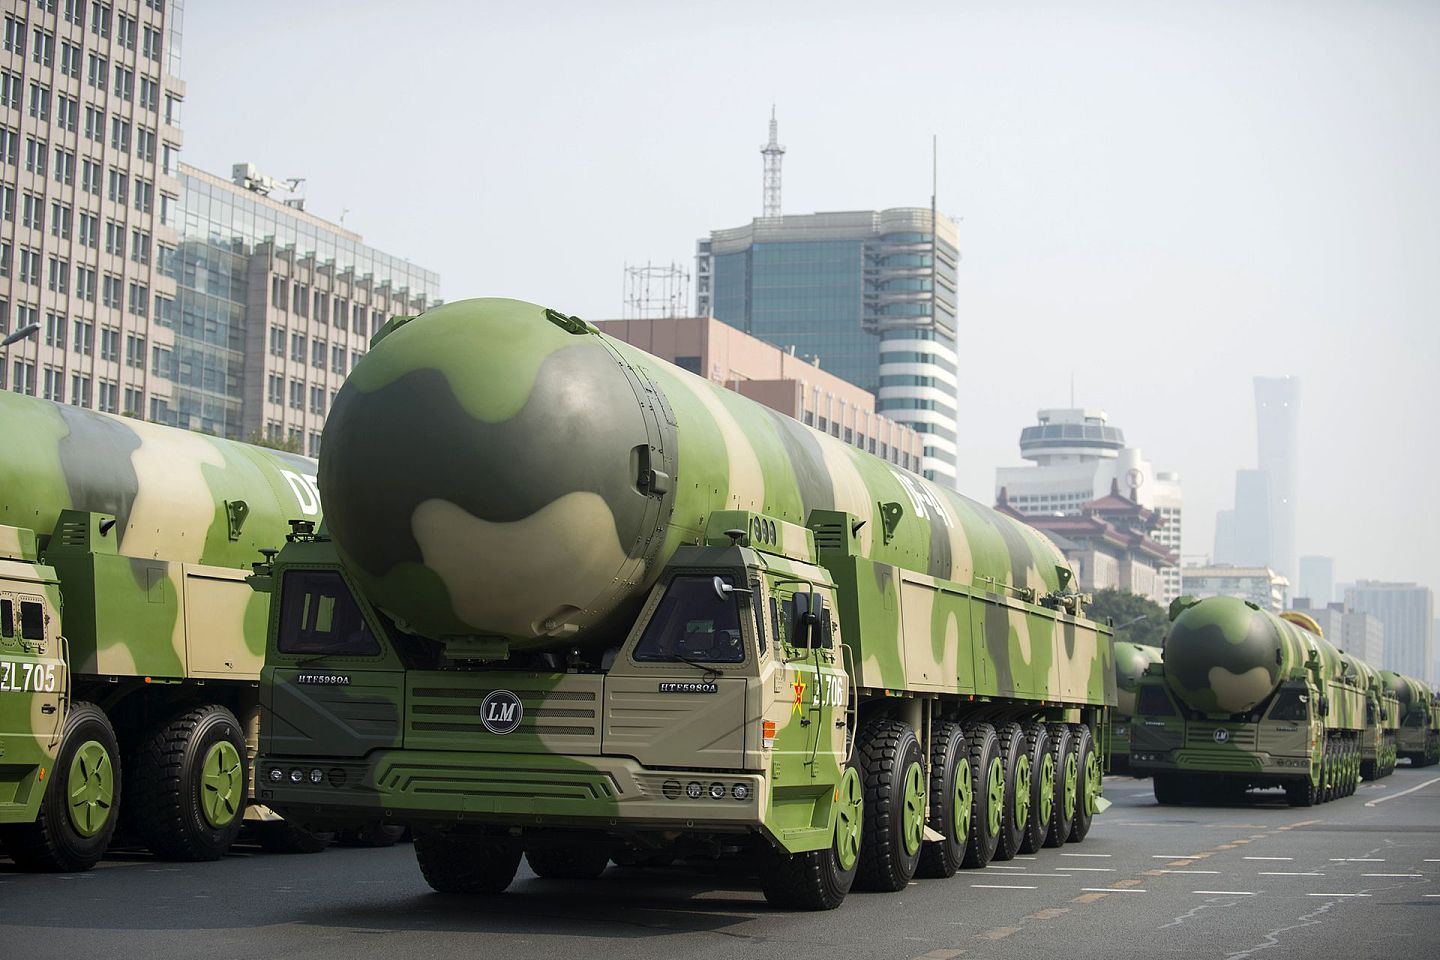 东风-41型洲际弹道导弹目前是中国主要的核威胁力量之一。（新华社）